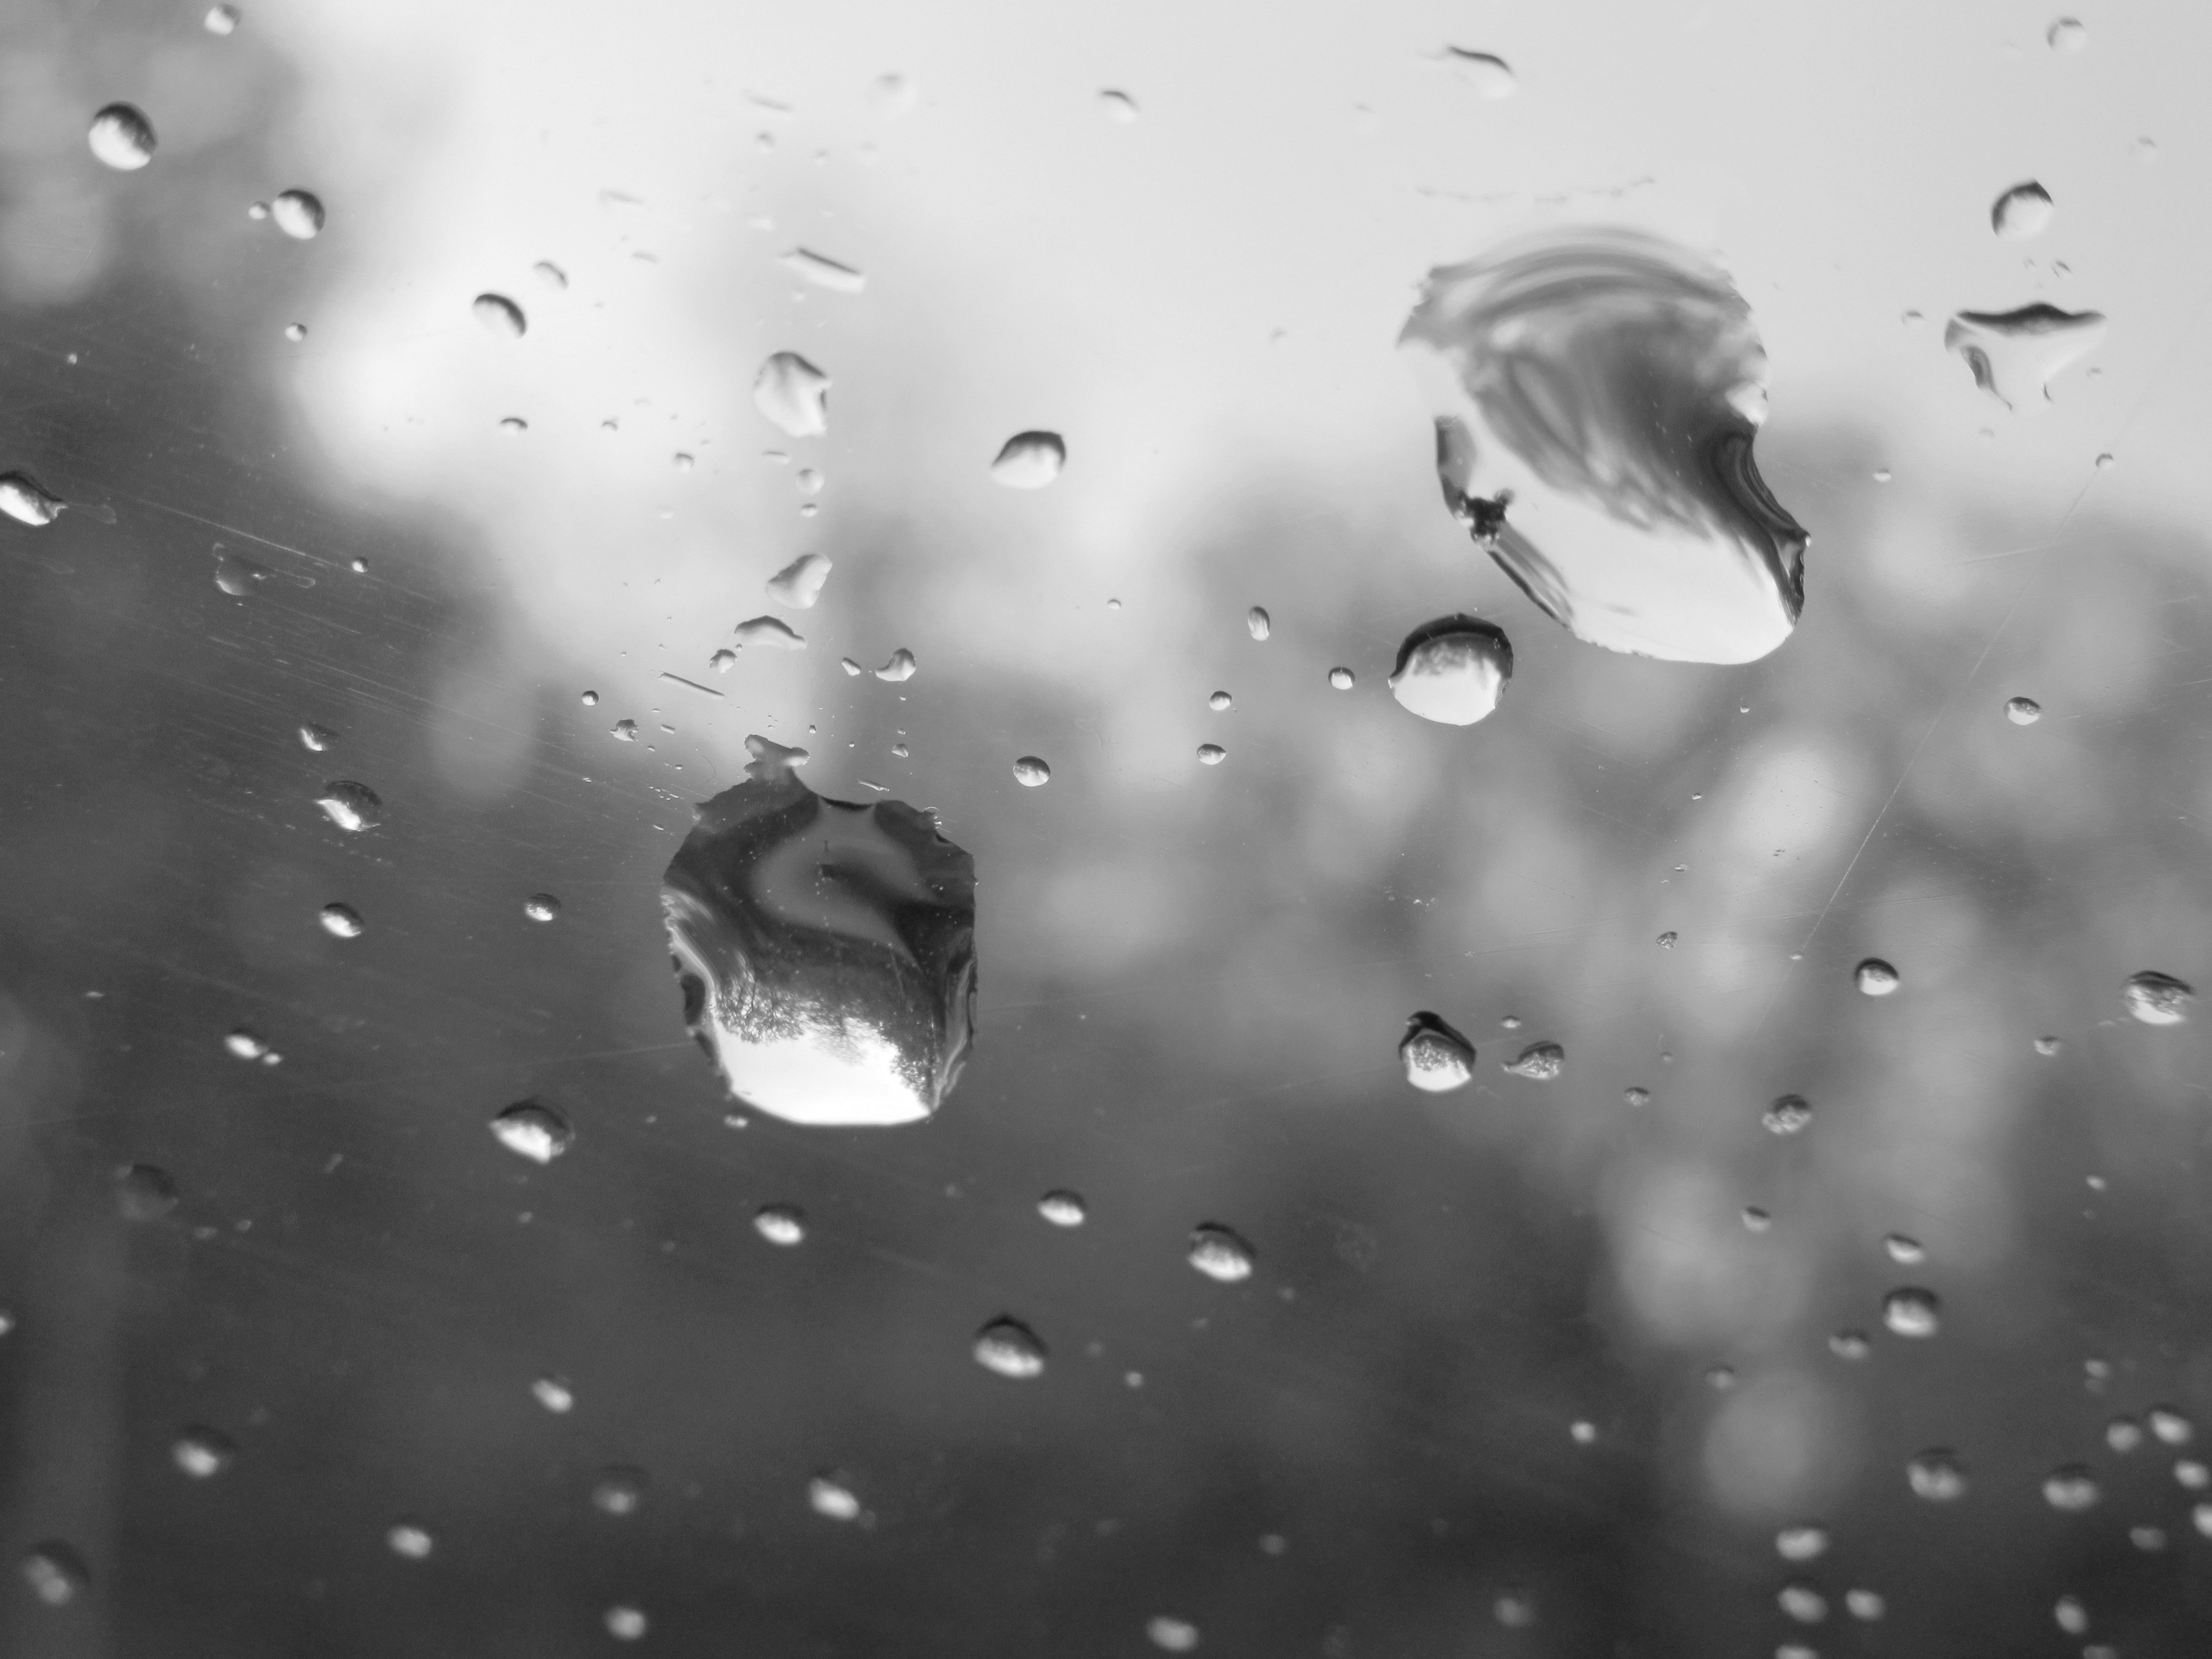 Мельчайших капли воды в воздухе. Капли на стекле. Падающие капли воды. Капли дождя на стекле. Капли падают.